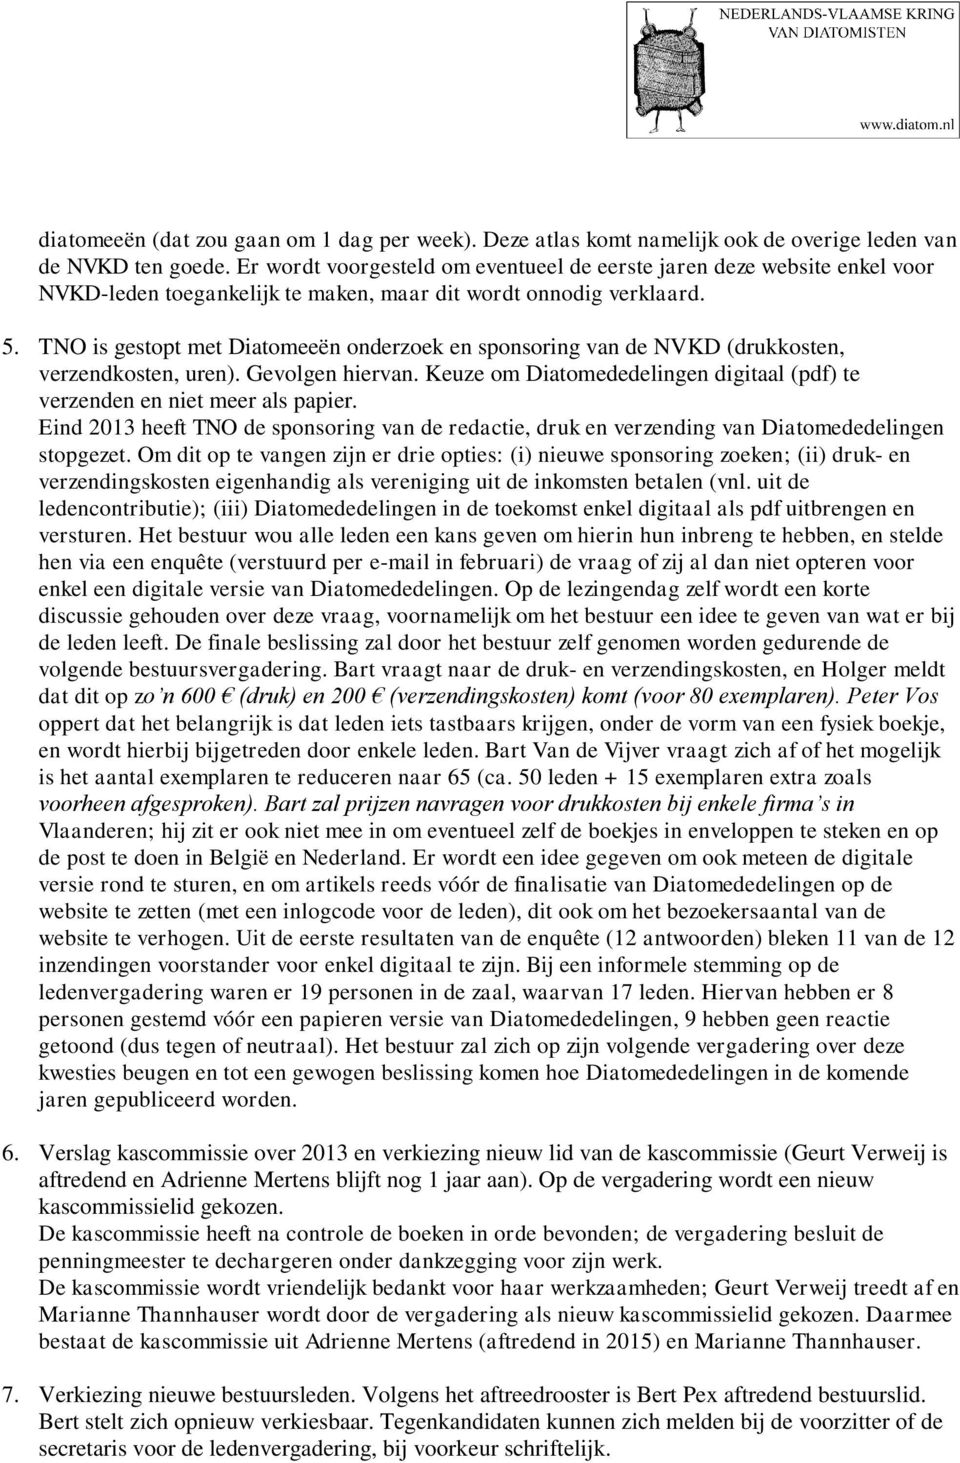 TNO is gestopt met Diatomeeën onderzoek en sponsoring van de NVKD (drukkosten, verzendkosten, uren). Gevolgen hiervan. Keuze om Diatomededelingen digitaal (pdf) te verzenden en niet meer als papier.